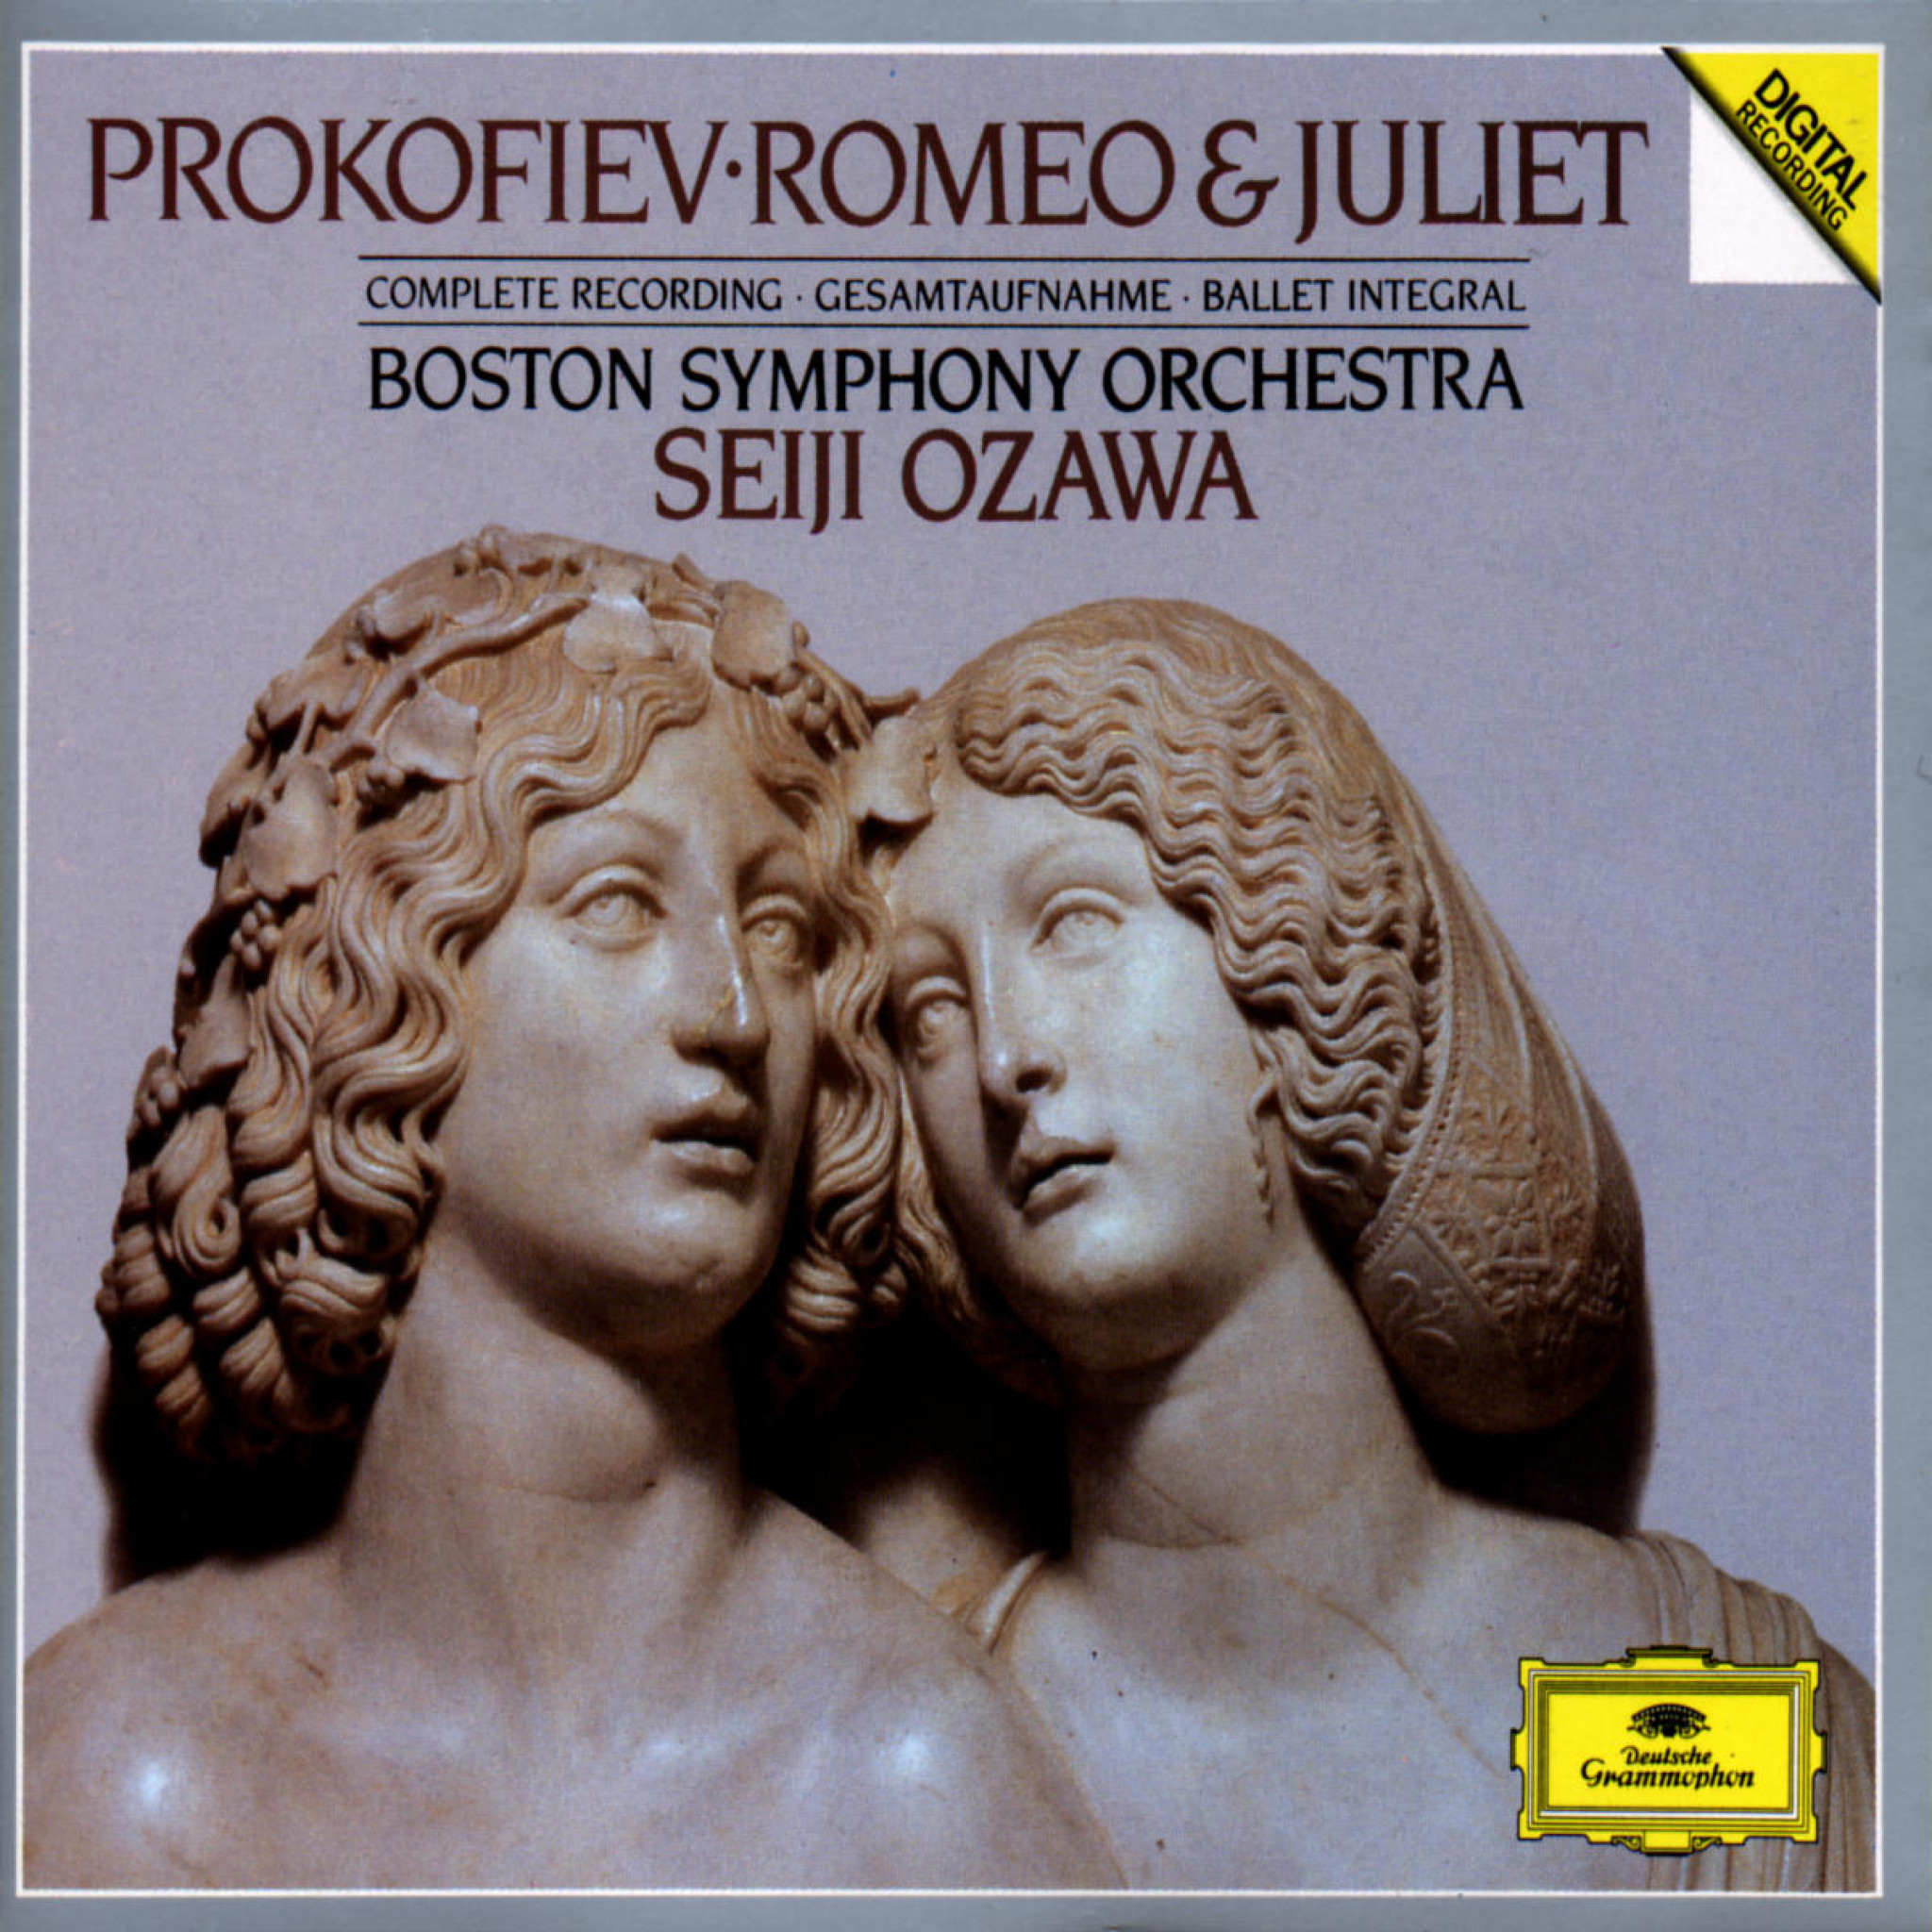 Prokofiev: Romeo & Juliet, op.64 0028942326822